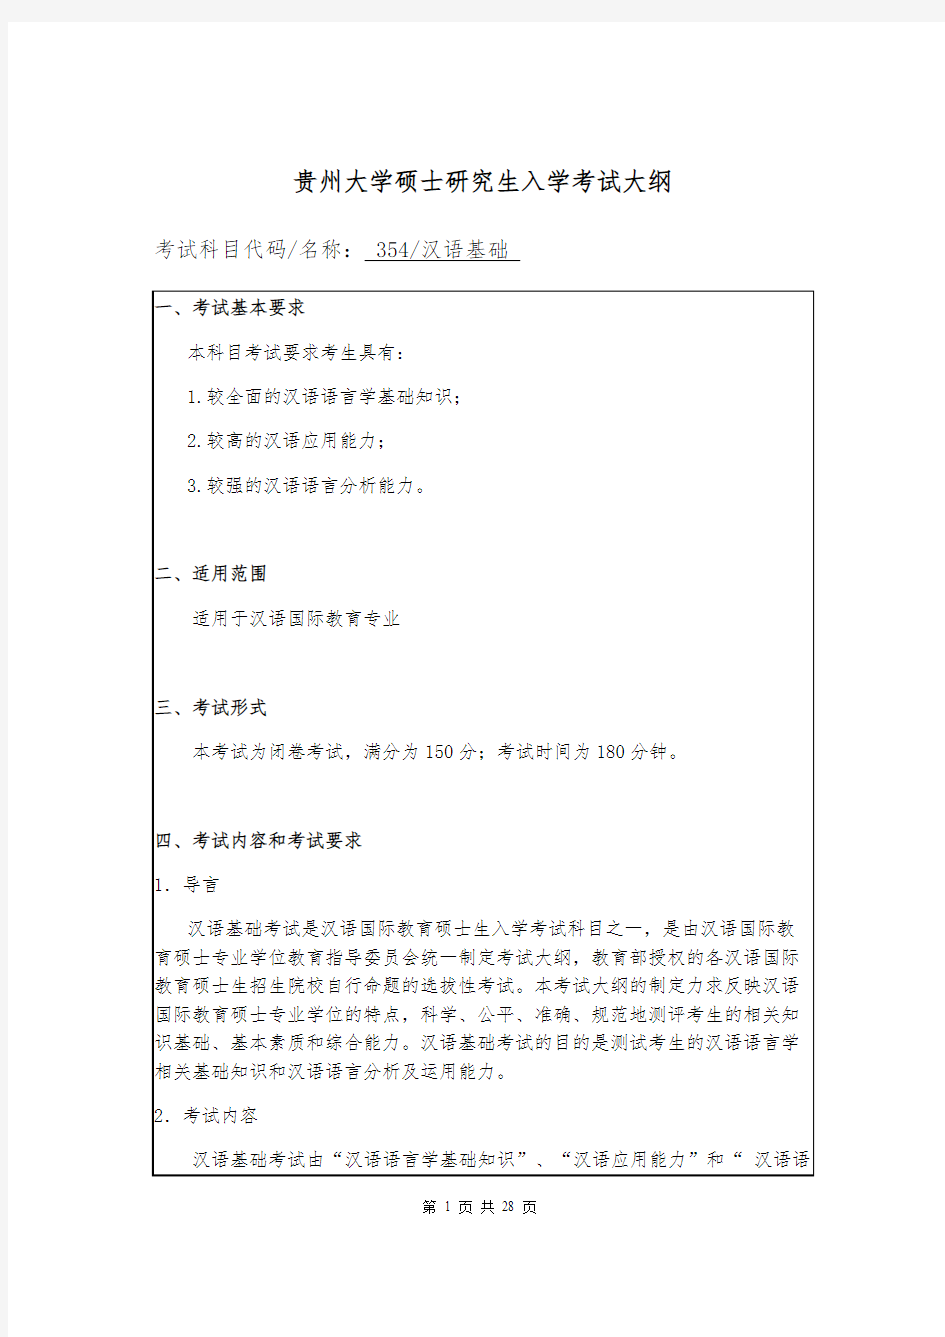 贵州大学354汉语基础2020年考研专业课初试大纲